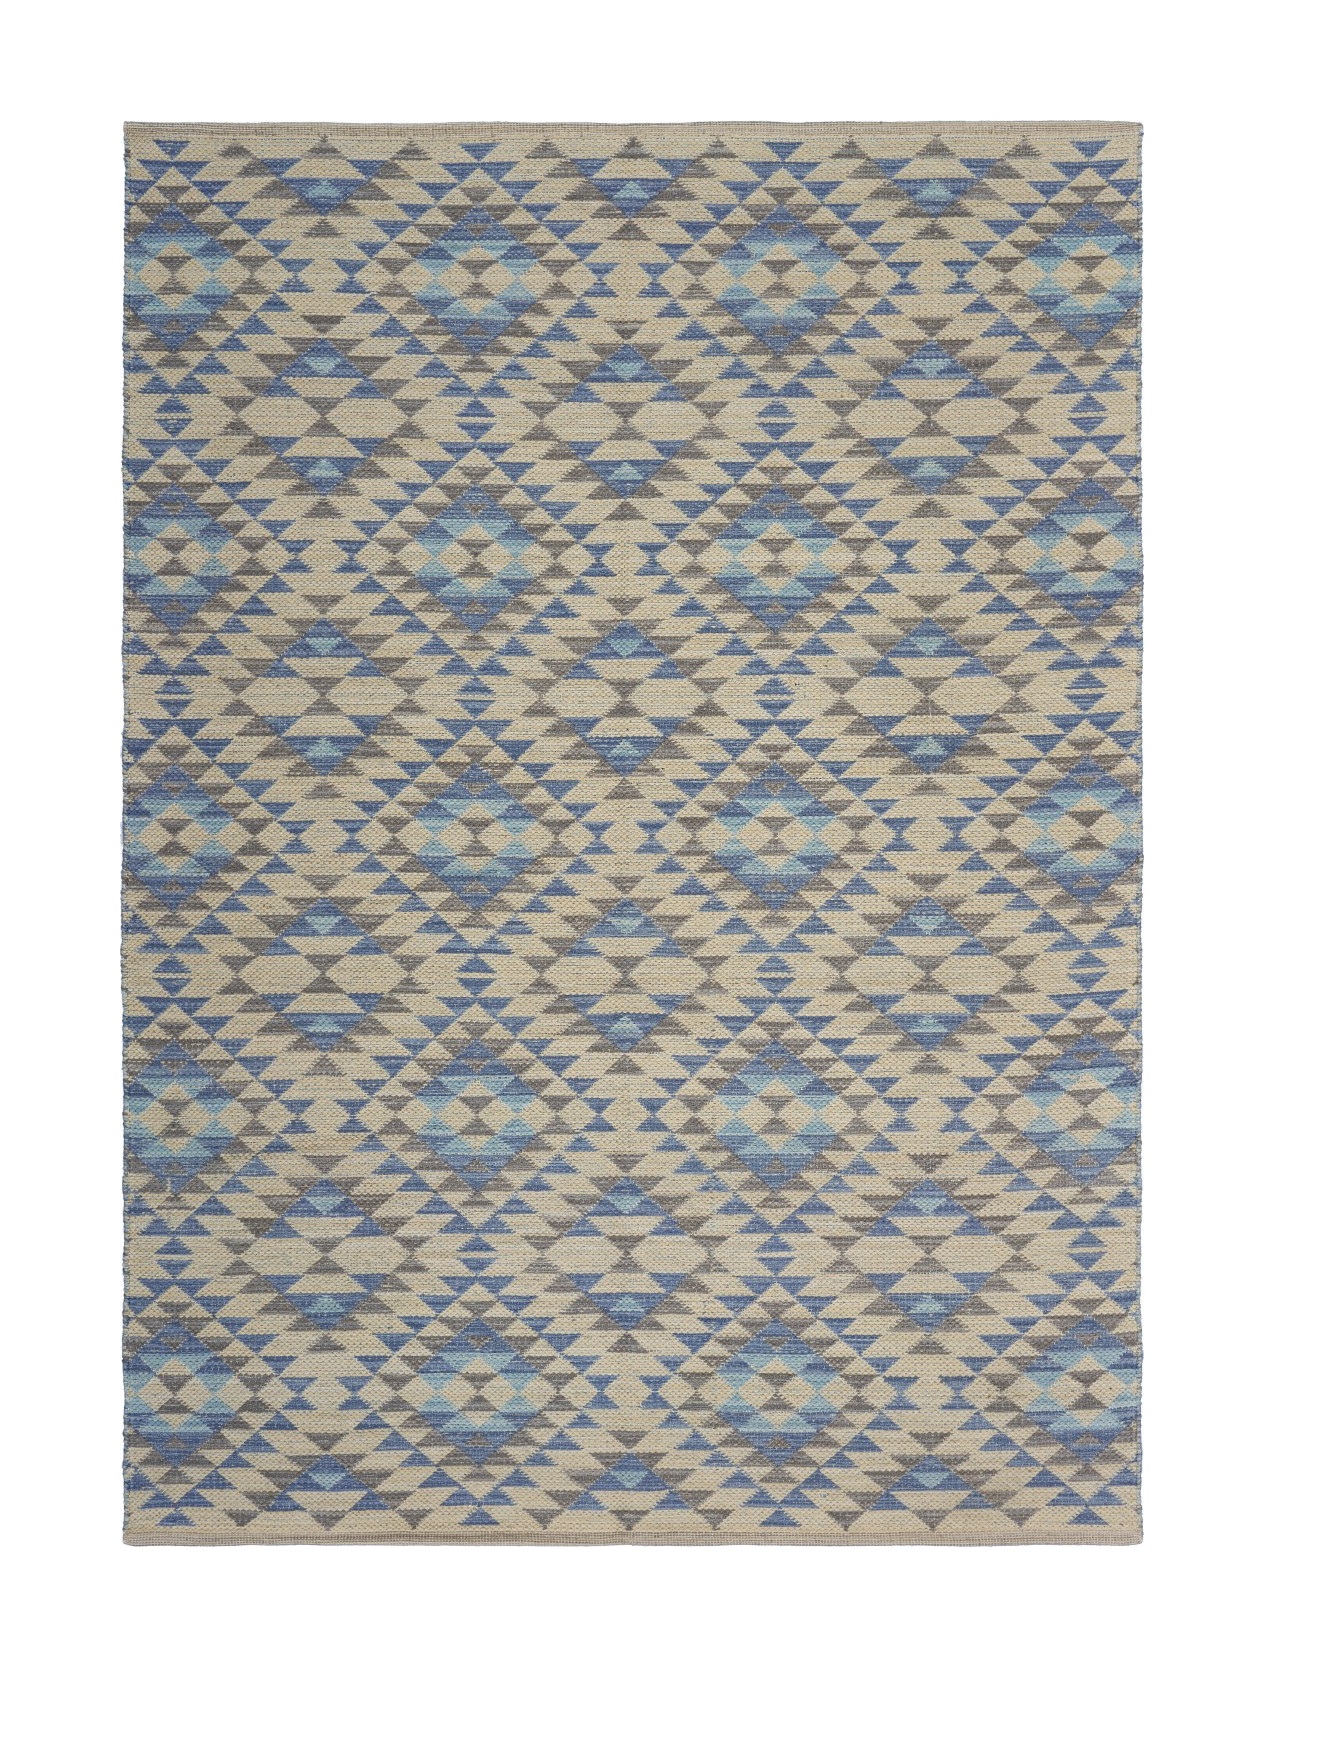 5’ x 7’ Blue Decorative Lattice Area Rug-395475-1